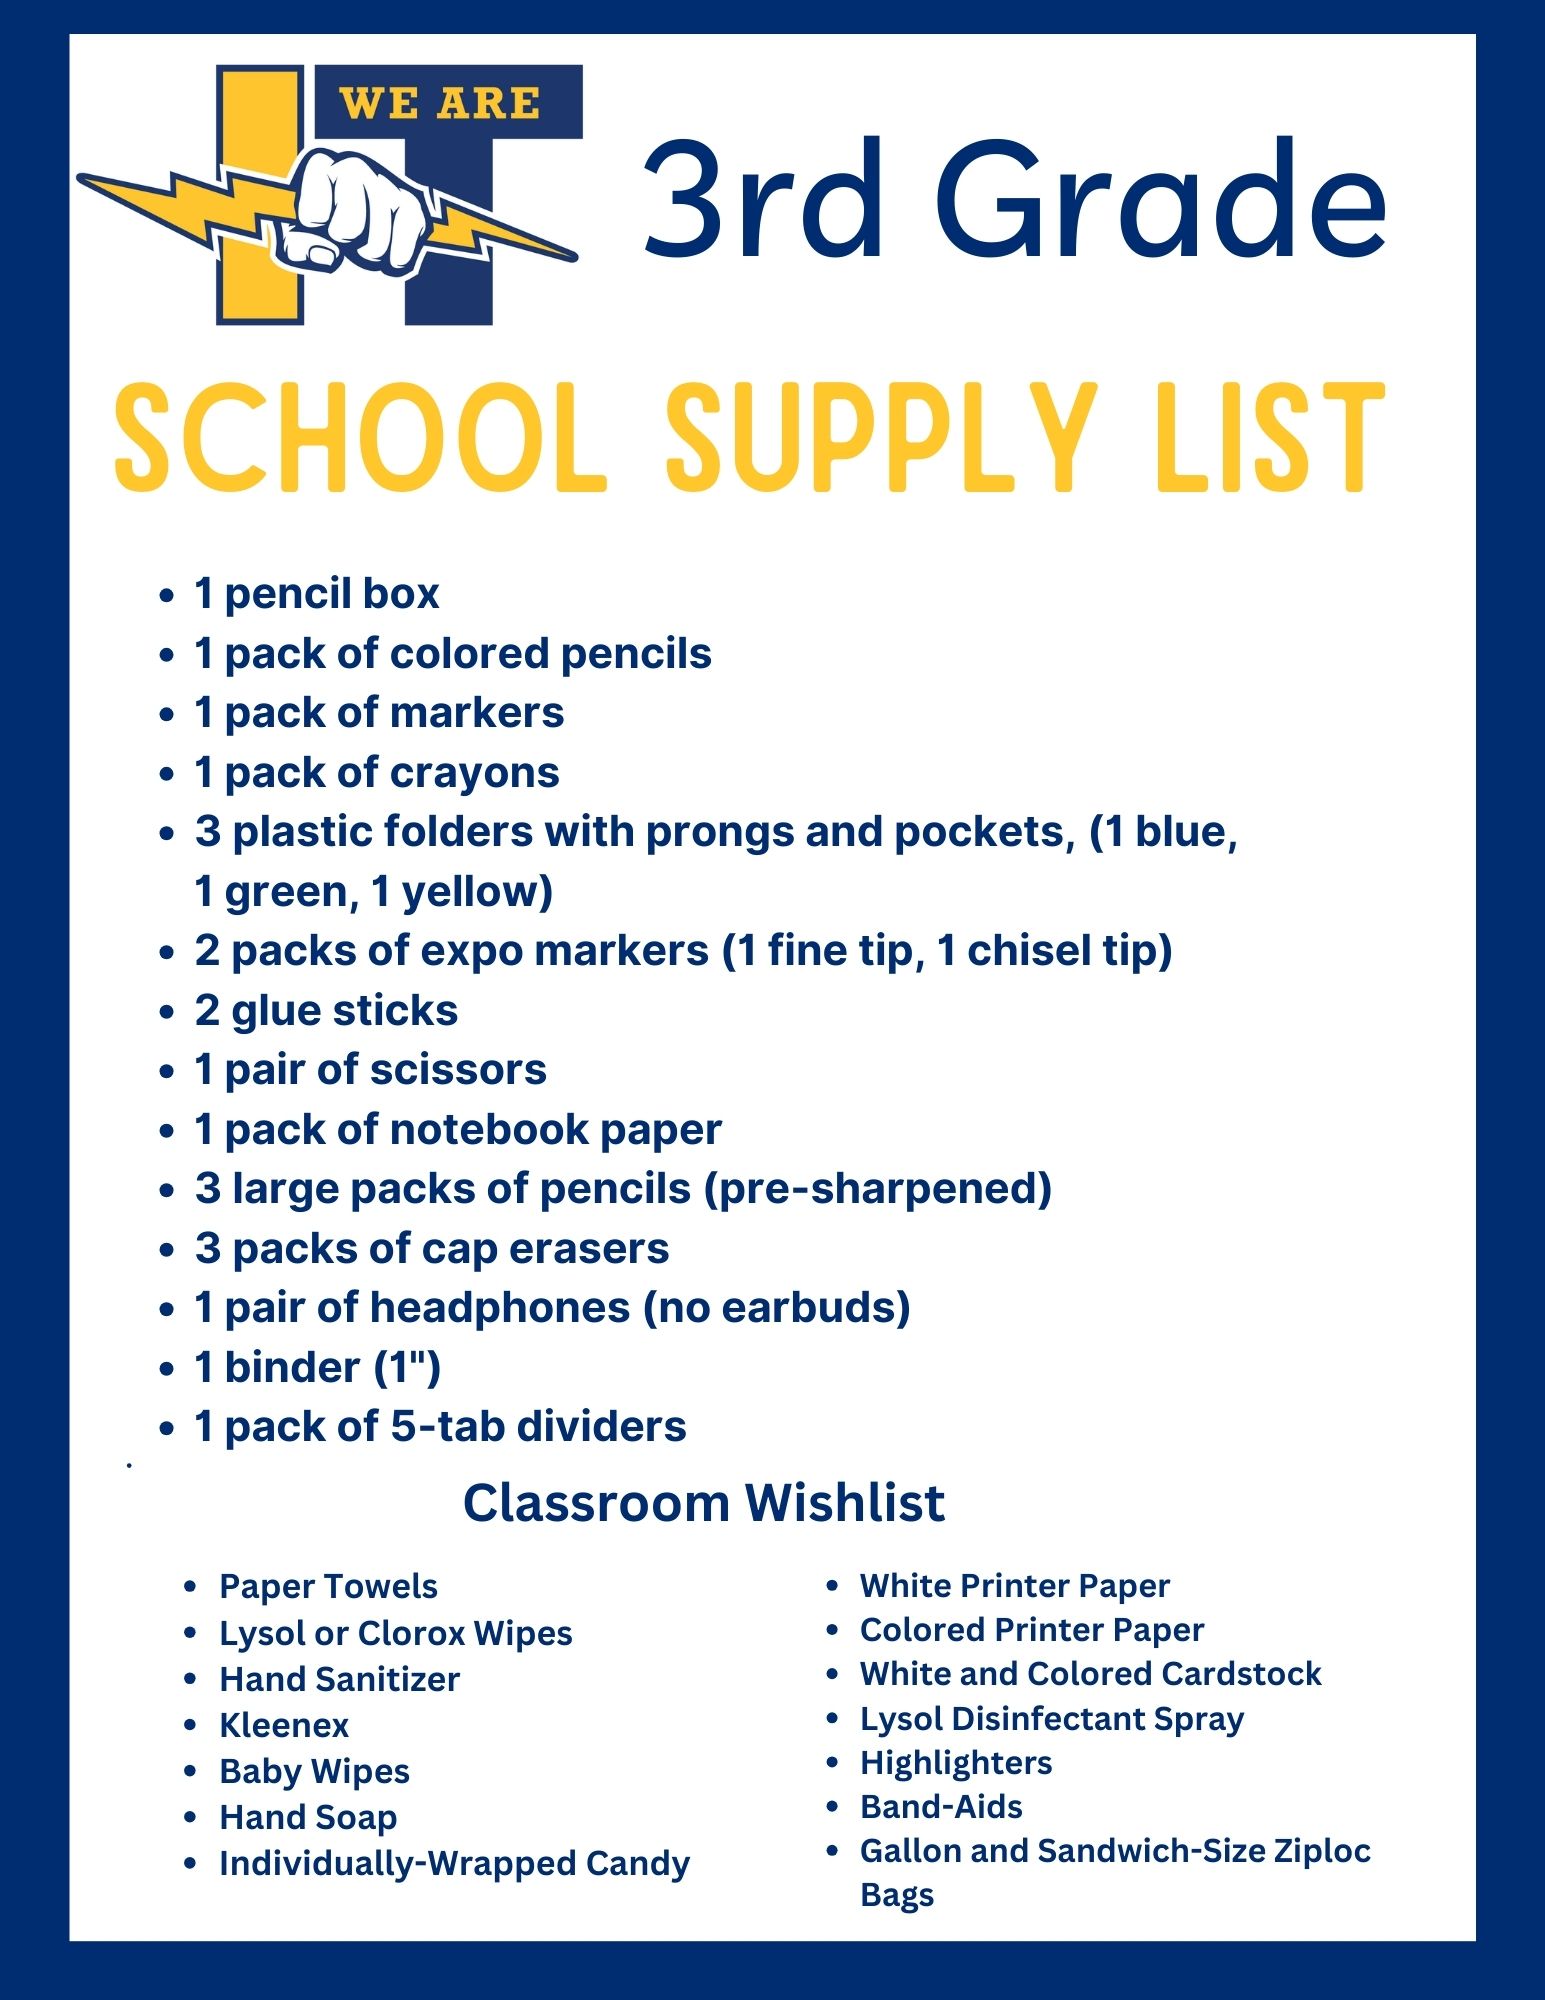 3rd grade supply list